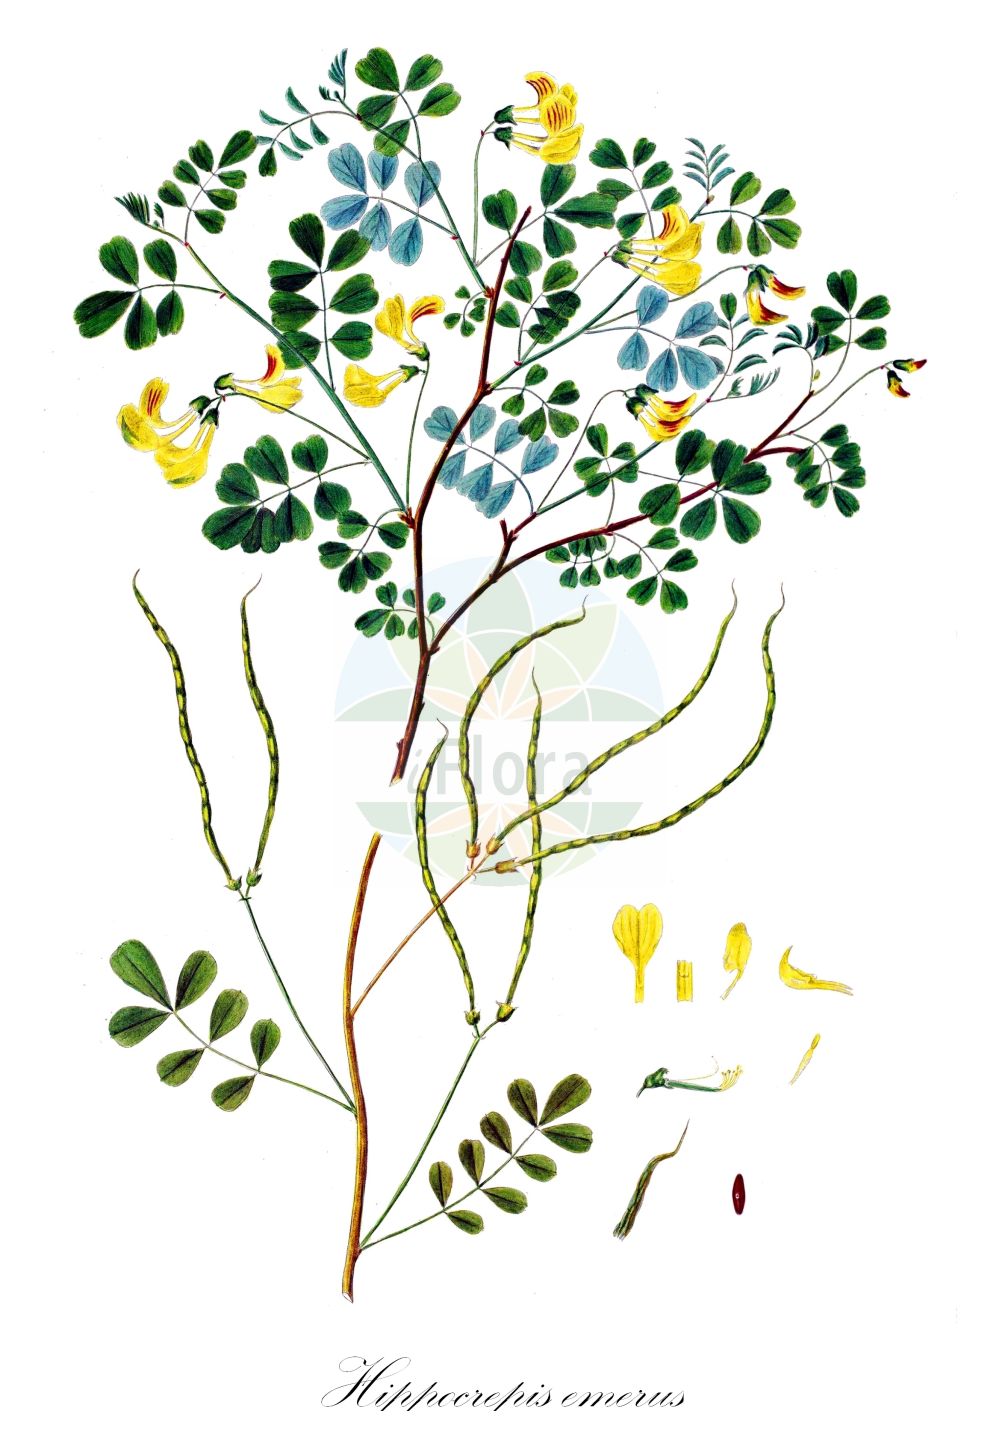 Historische Abbildung von Hippocrepis emerus (Strauch-Kronwicke - Scorpion Senna). Das Bild zeigt Blatt, Bluete, Frucht und Same. ---- Historical Drawing of Hippocrepis emerus (Strauch-Kronwicke - Scorpion Senna). The image is showing leaf, flower, fruit and seed.(Hippocrepis emerus,Strauch-Kronwicke,Scorpion Senna,Hippocrepis emerus,Strauch-Kronwicke,Strauchige Kronwicke,Strauchwicke,Scorpion Senna,False Senna,Hippocrepis,Hufeisenklee,Horseshoe,Fabaceae,Schmetterlingsblütler,Pea family,Blatt,Bluete,Frucht,Same,leaf,flower,fruit,seed,Oeder (1761-1883))